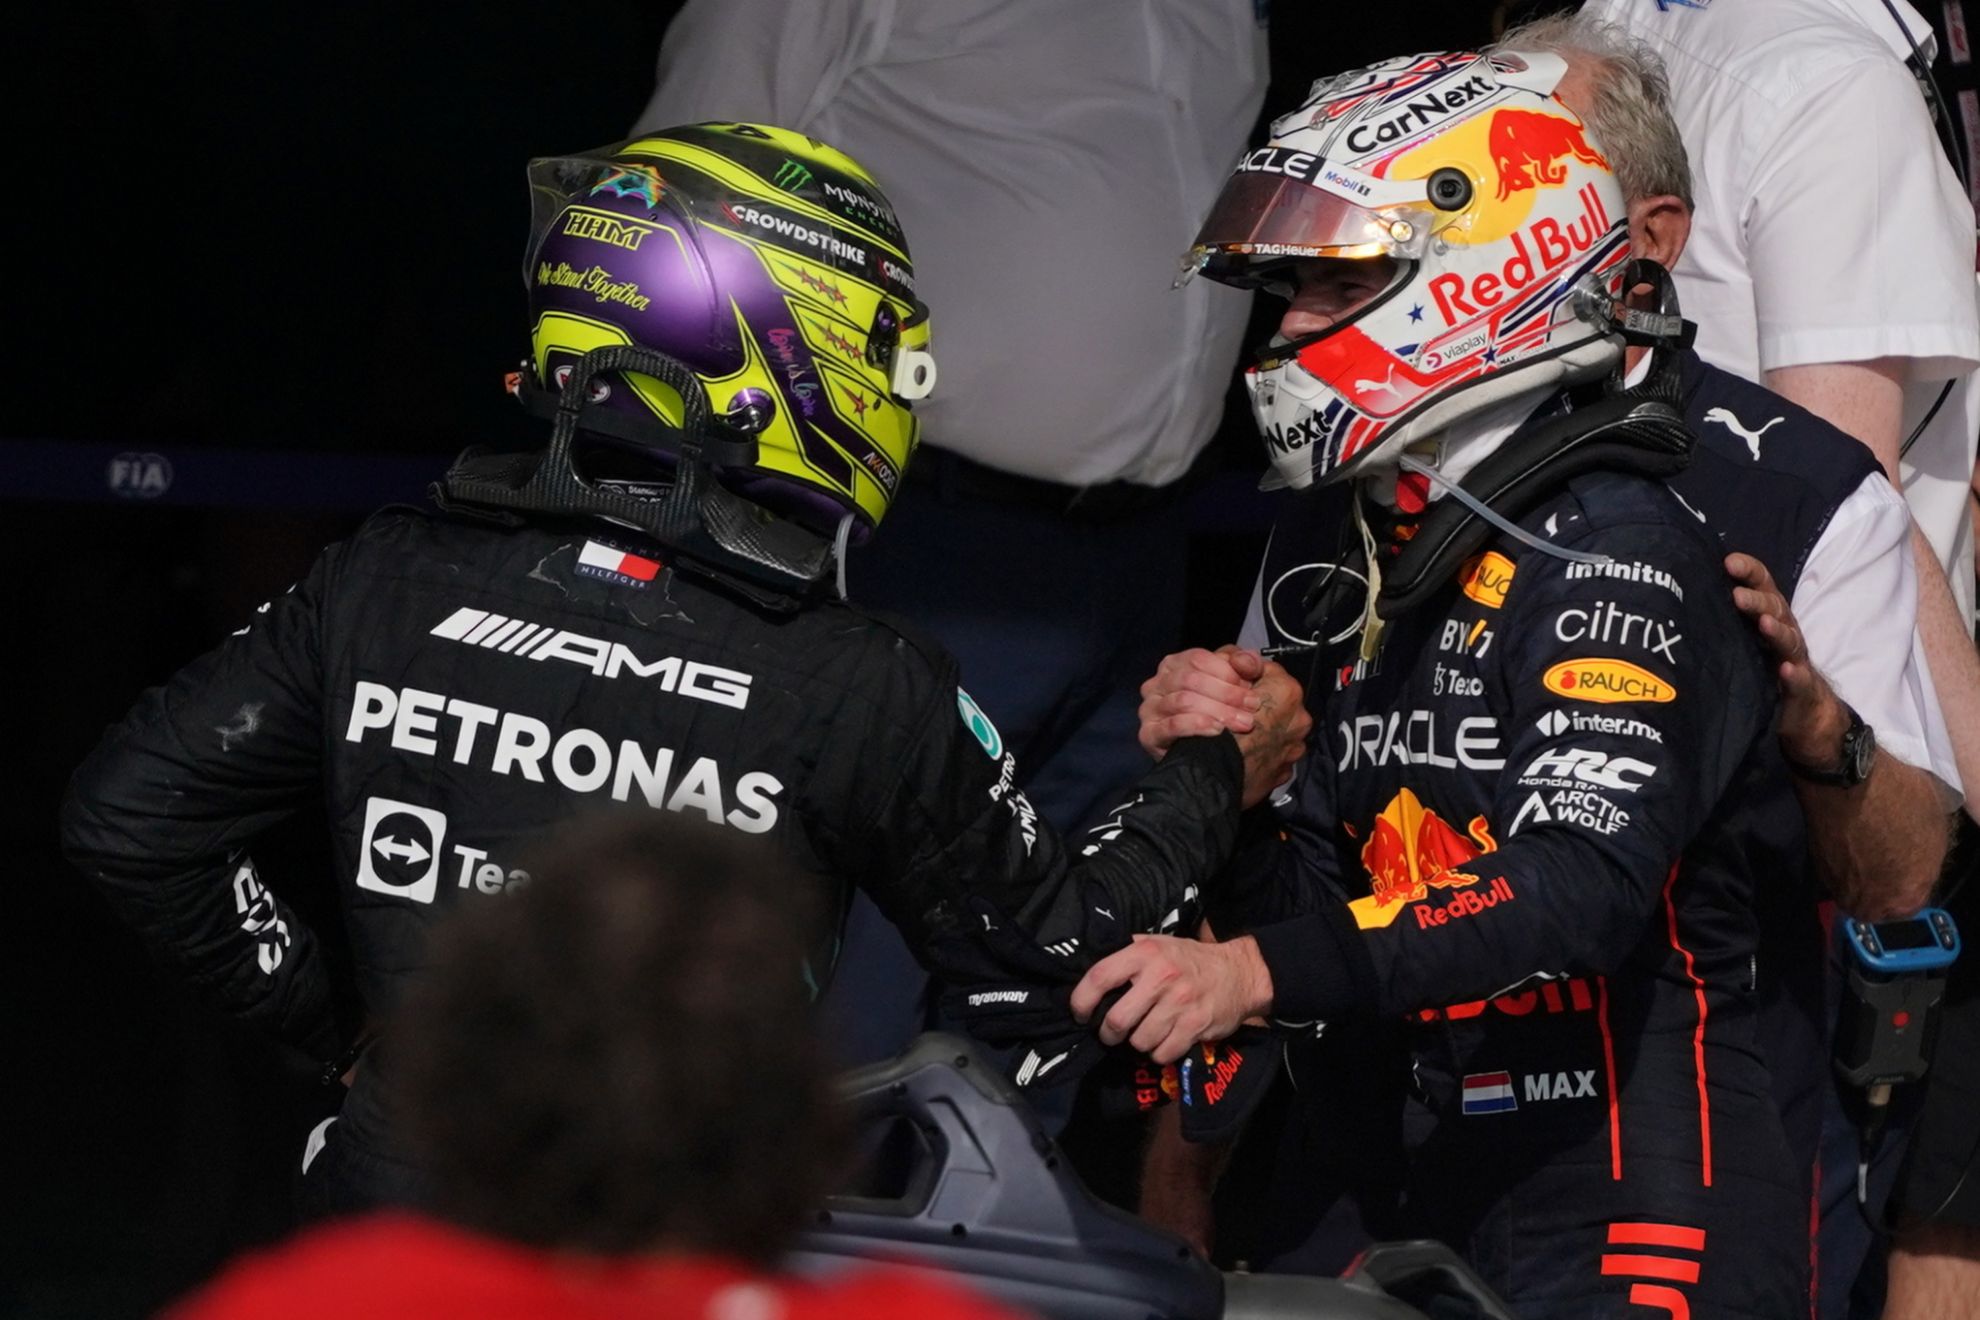 La inslita revelacin de Verstappen sobre Hamilton: "La gente me dice que... "